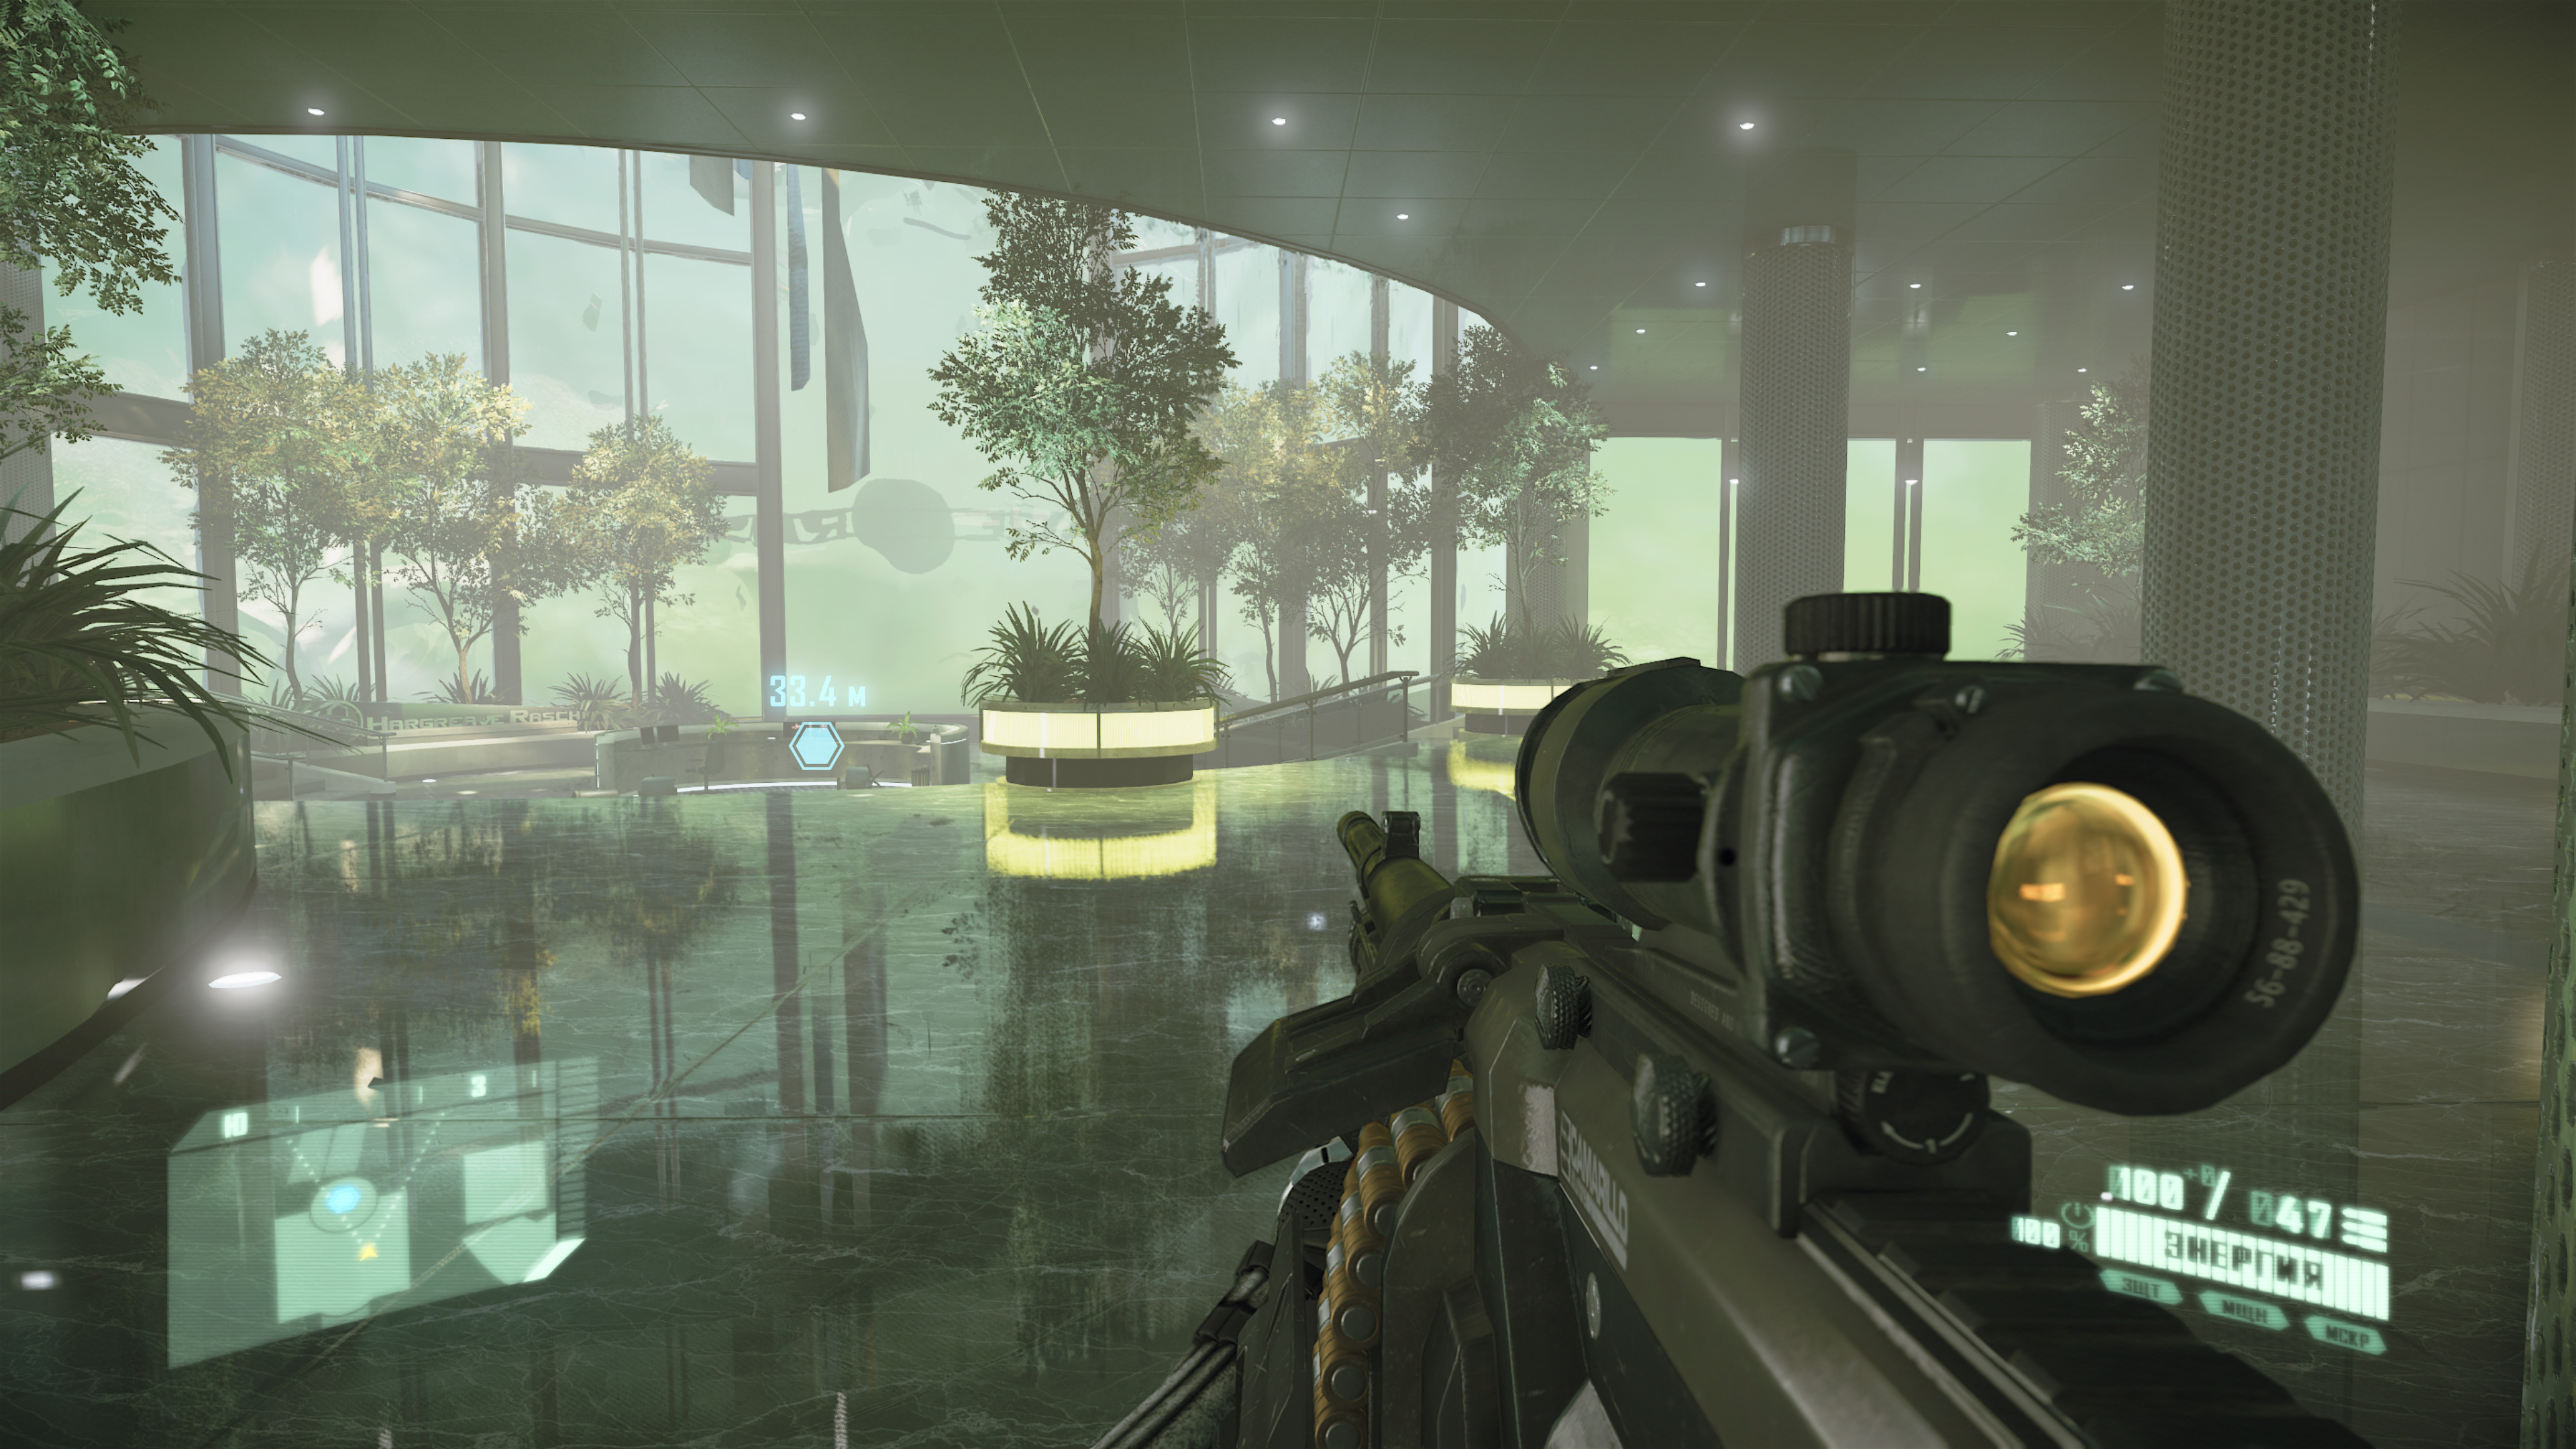 Трехлитровая банка солений от Crytek: Обзор Crysis Remastered Trilogy 